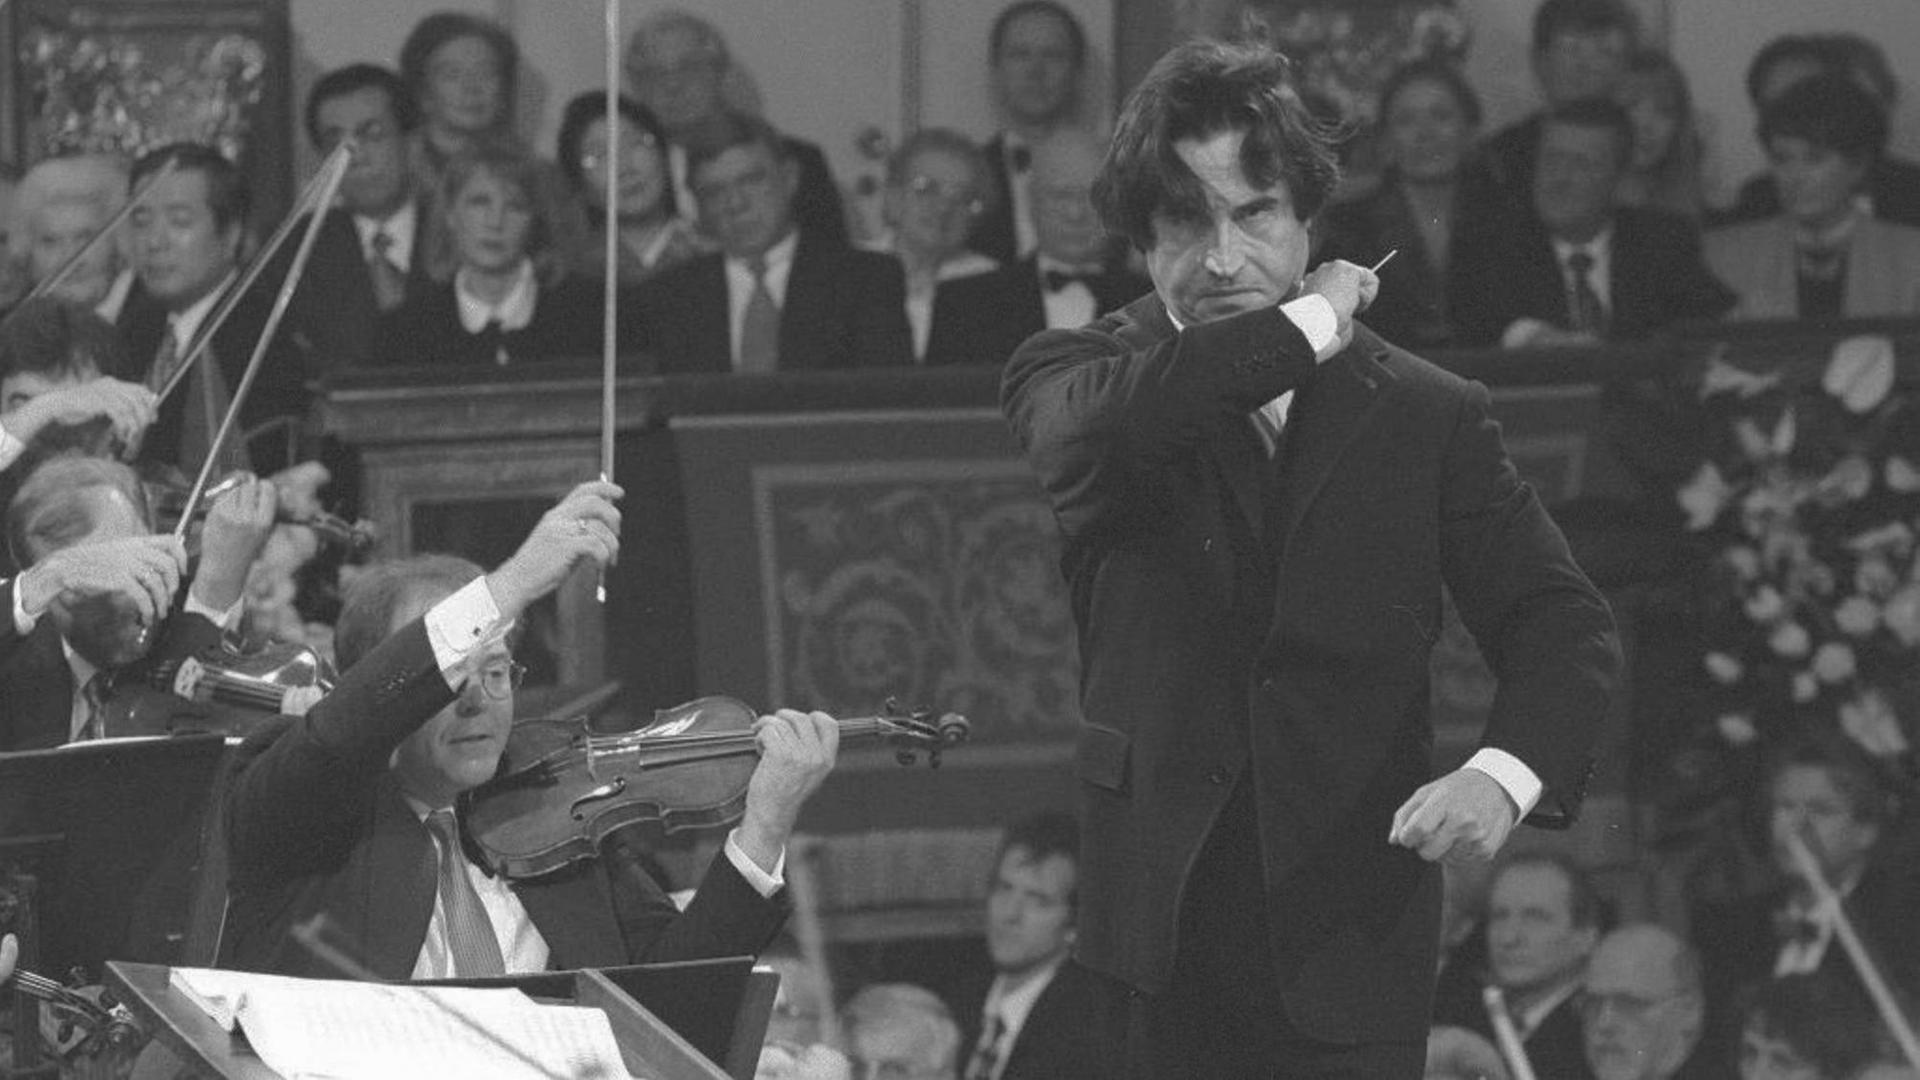 Schwarz-weiß-Aufnahme mit dem Dirigenten rechts im Bild, links sitzen die 1. Geiger mit erhobenen Bögen, im Hintergrund sitzt das Publikum. Der Dirigent trägt einen schwarzen Anzug, ein weißes Hemd und Schlips, die dunklen Haare fallen ihm ins Gesicht, der Taktstock ist erhoben zum Schlussakkord.